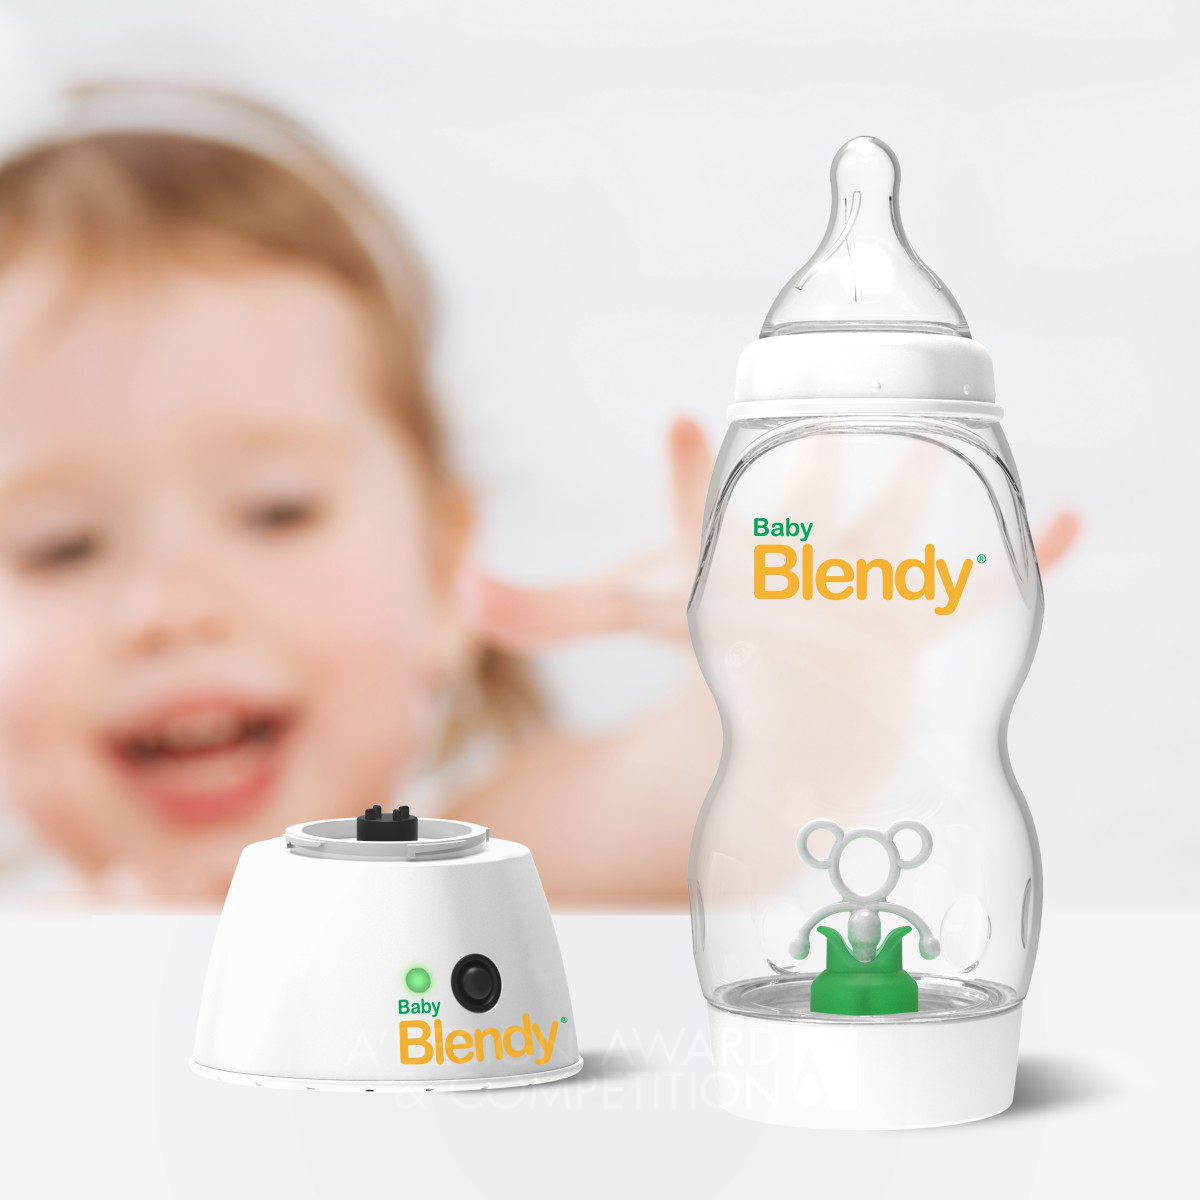 Baby Blendy: The Revolutionary Portable Baby Bottle Blender